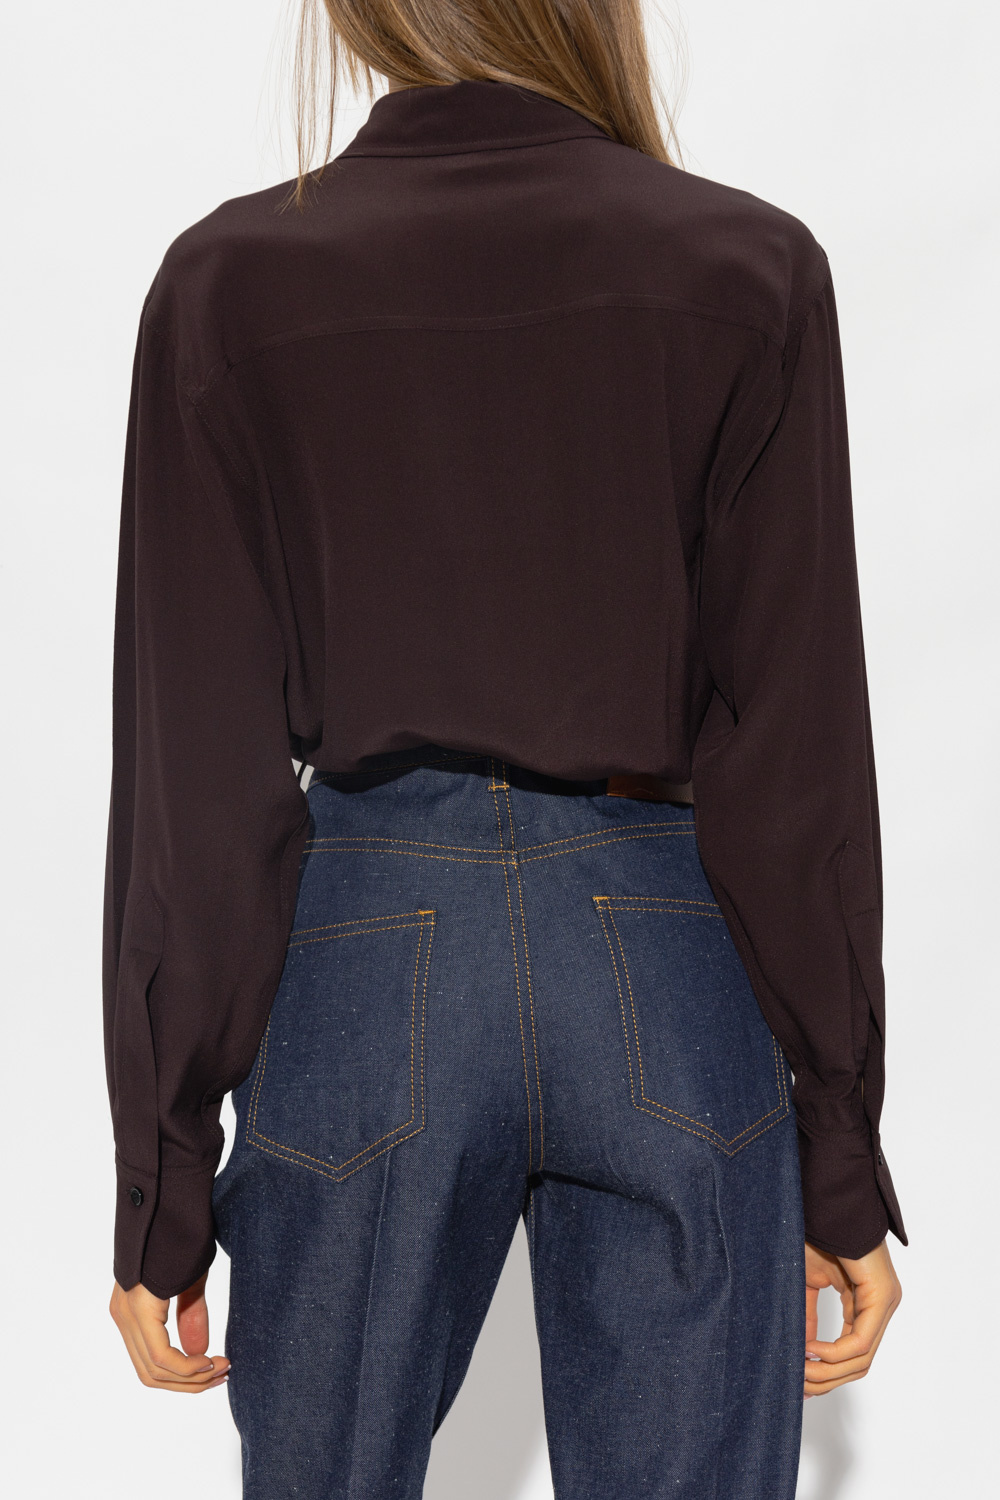 Victoria Beckham Silk shirt with pockets